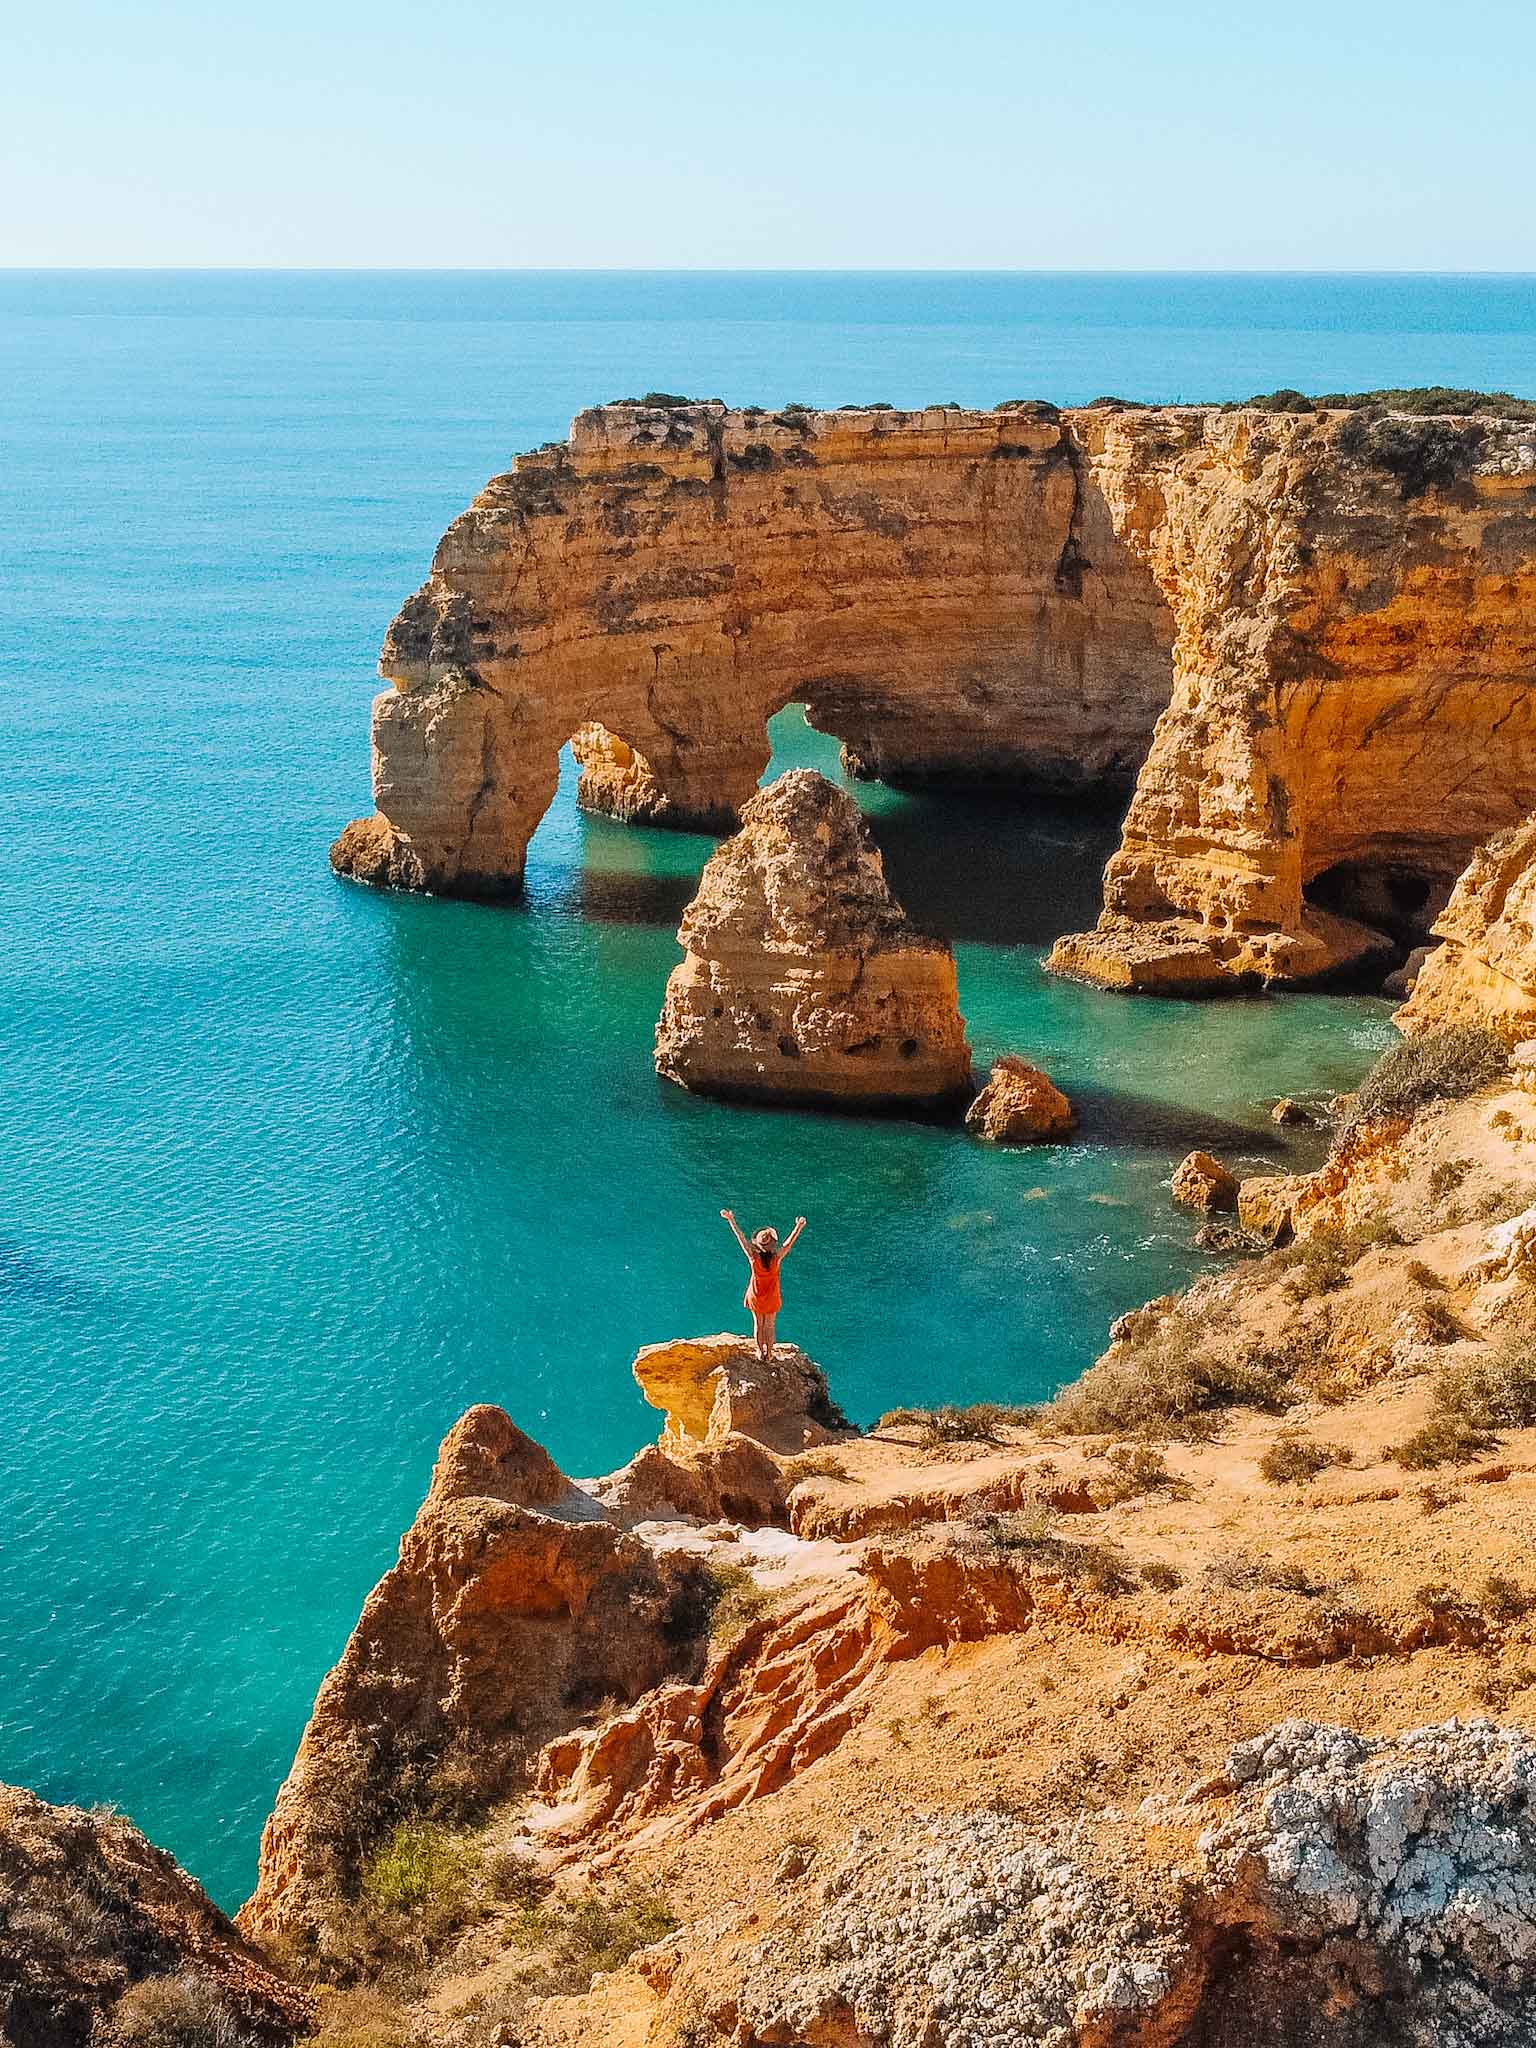 Best Instagram spots in Algarve in Portugal - Praia da Marinha